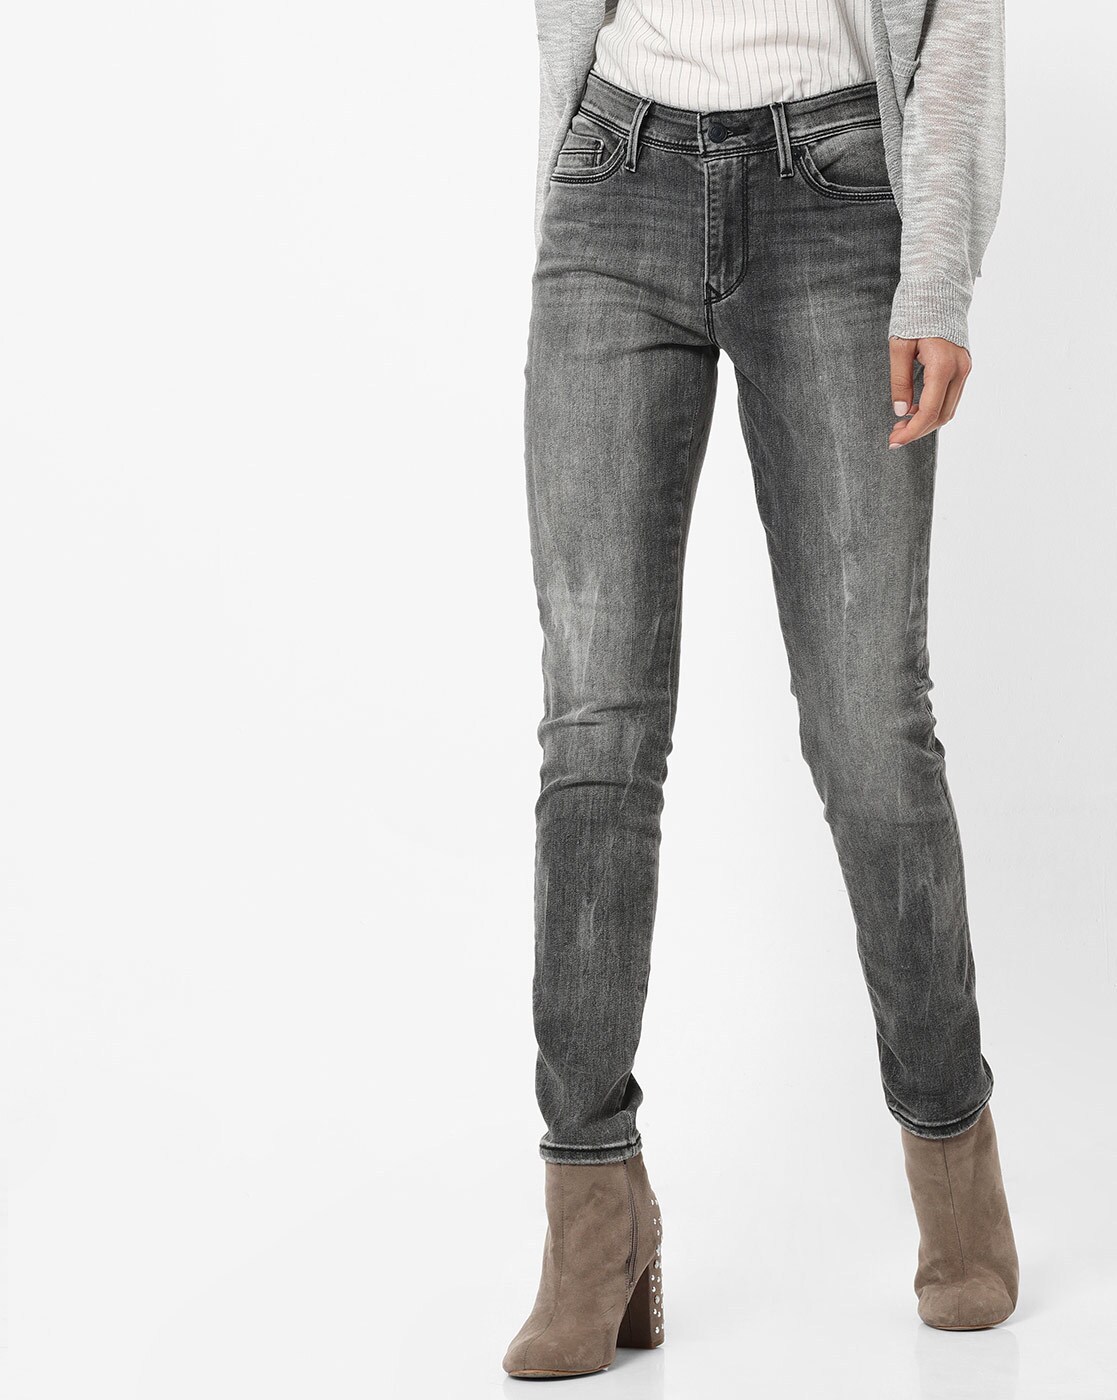 grey levis jeans